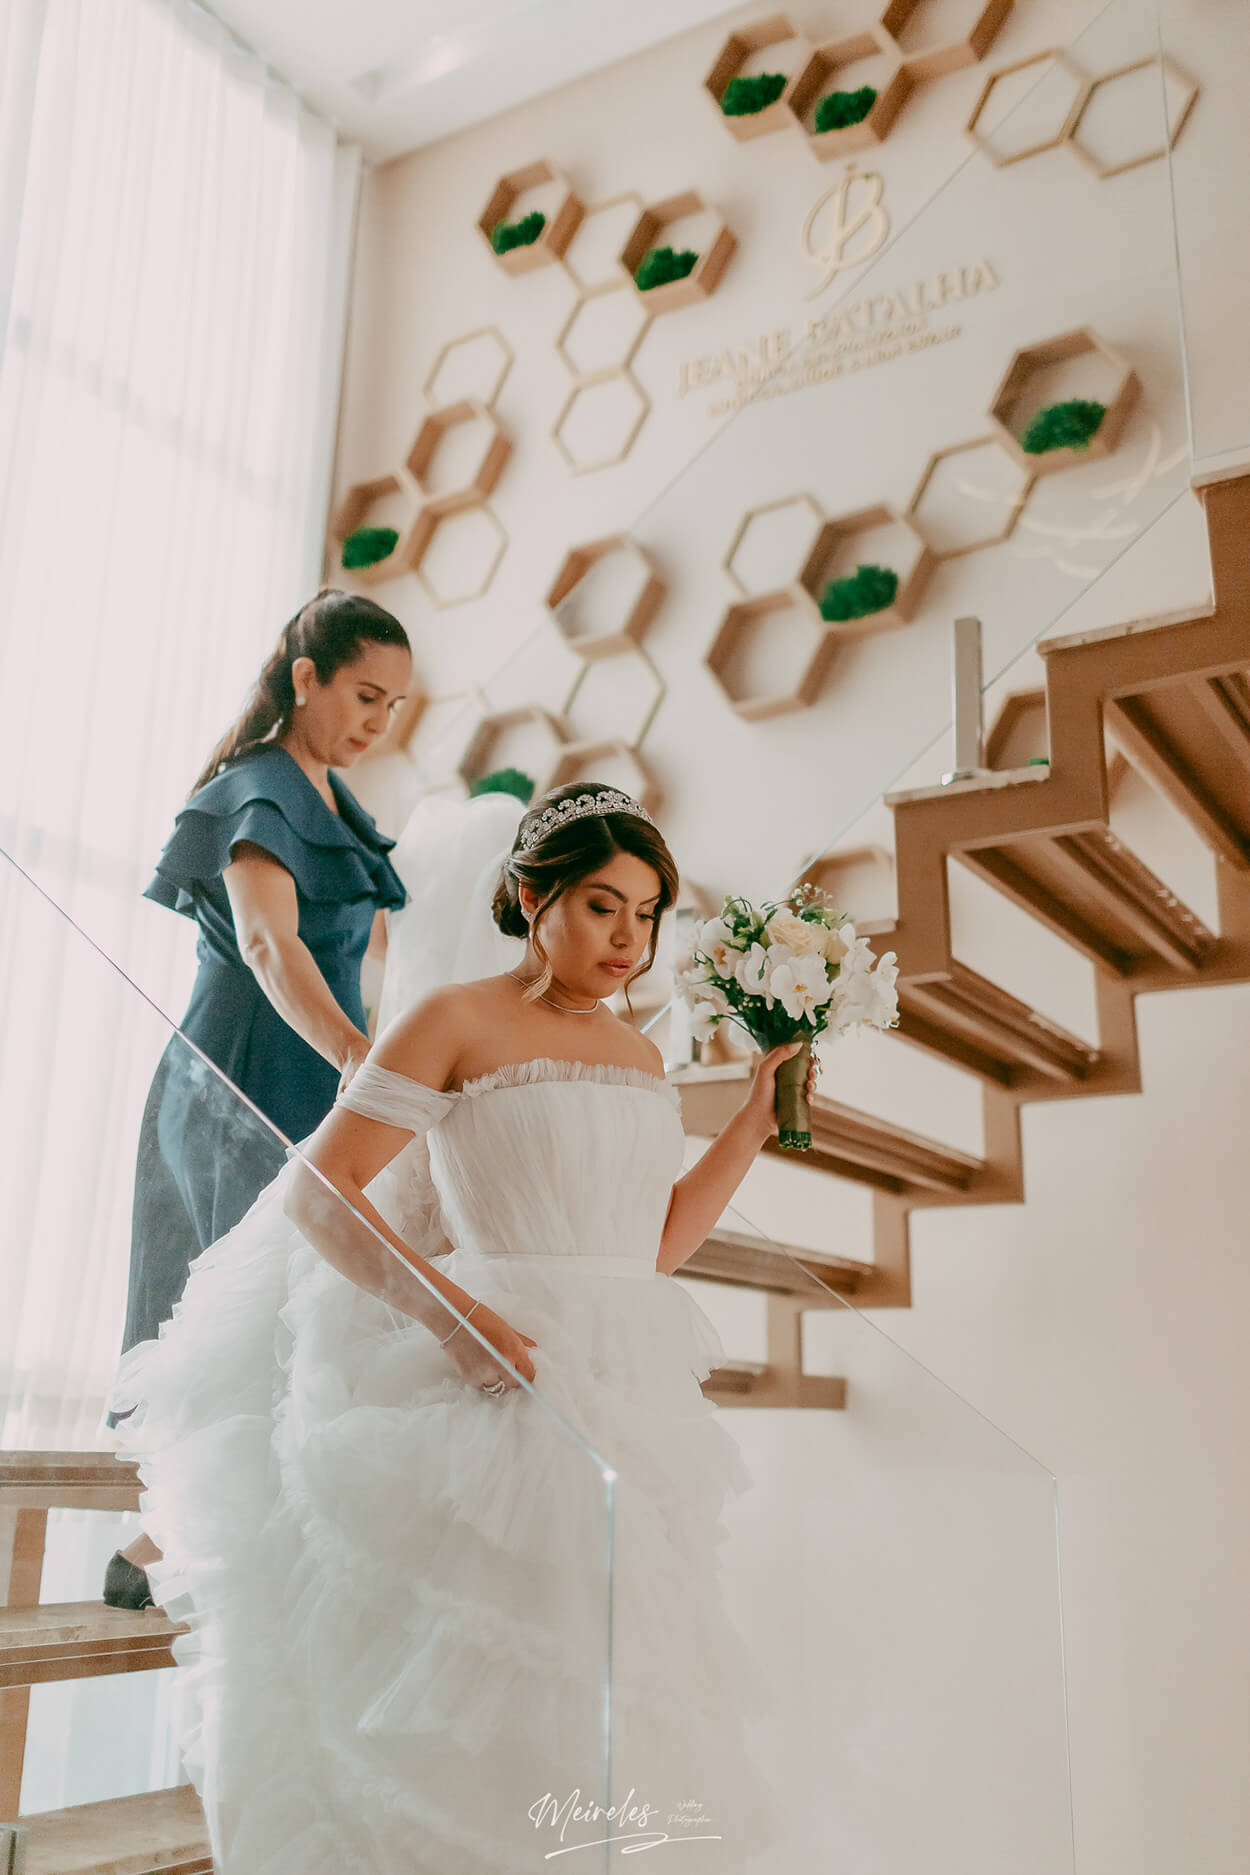 Noiva segurando um buquÊ de orquideas brancas descendo as escadas